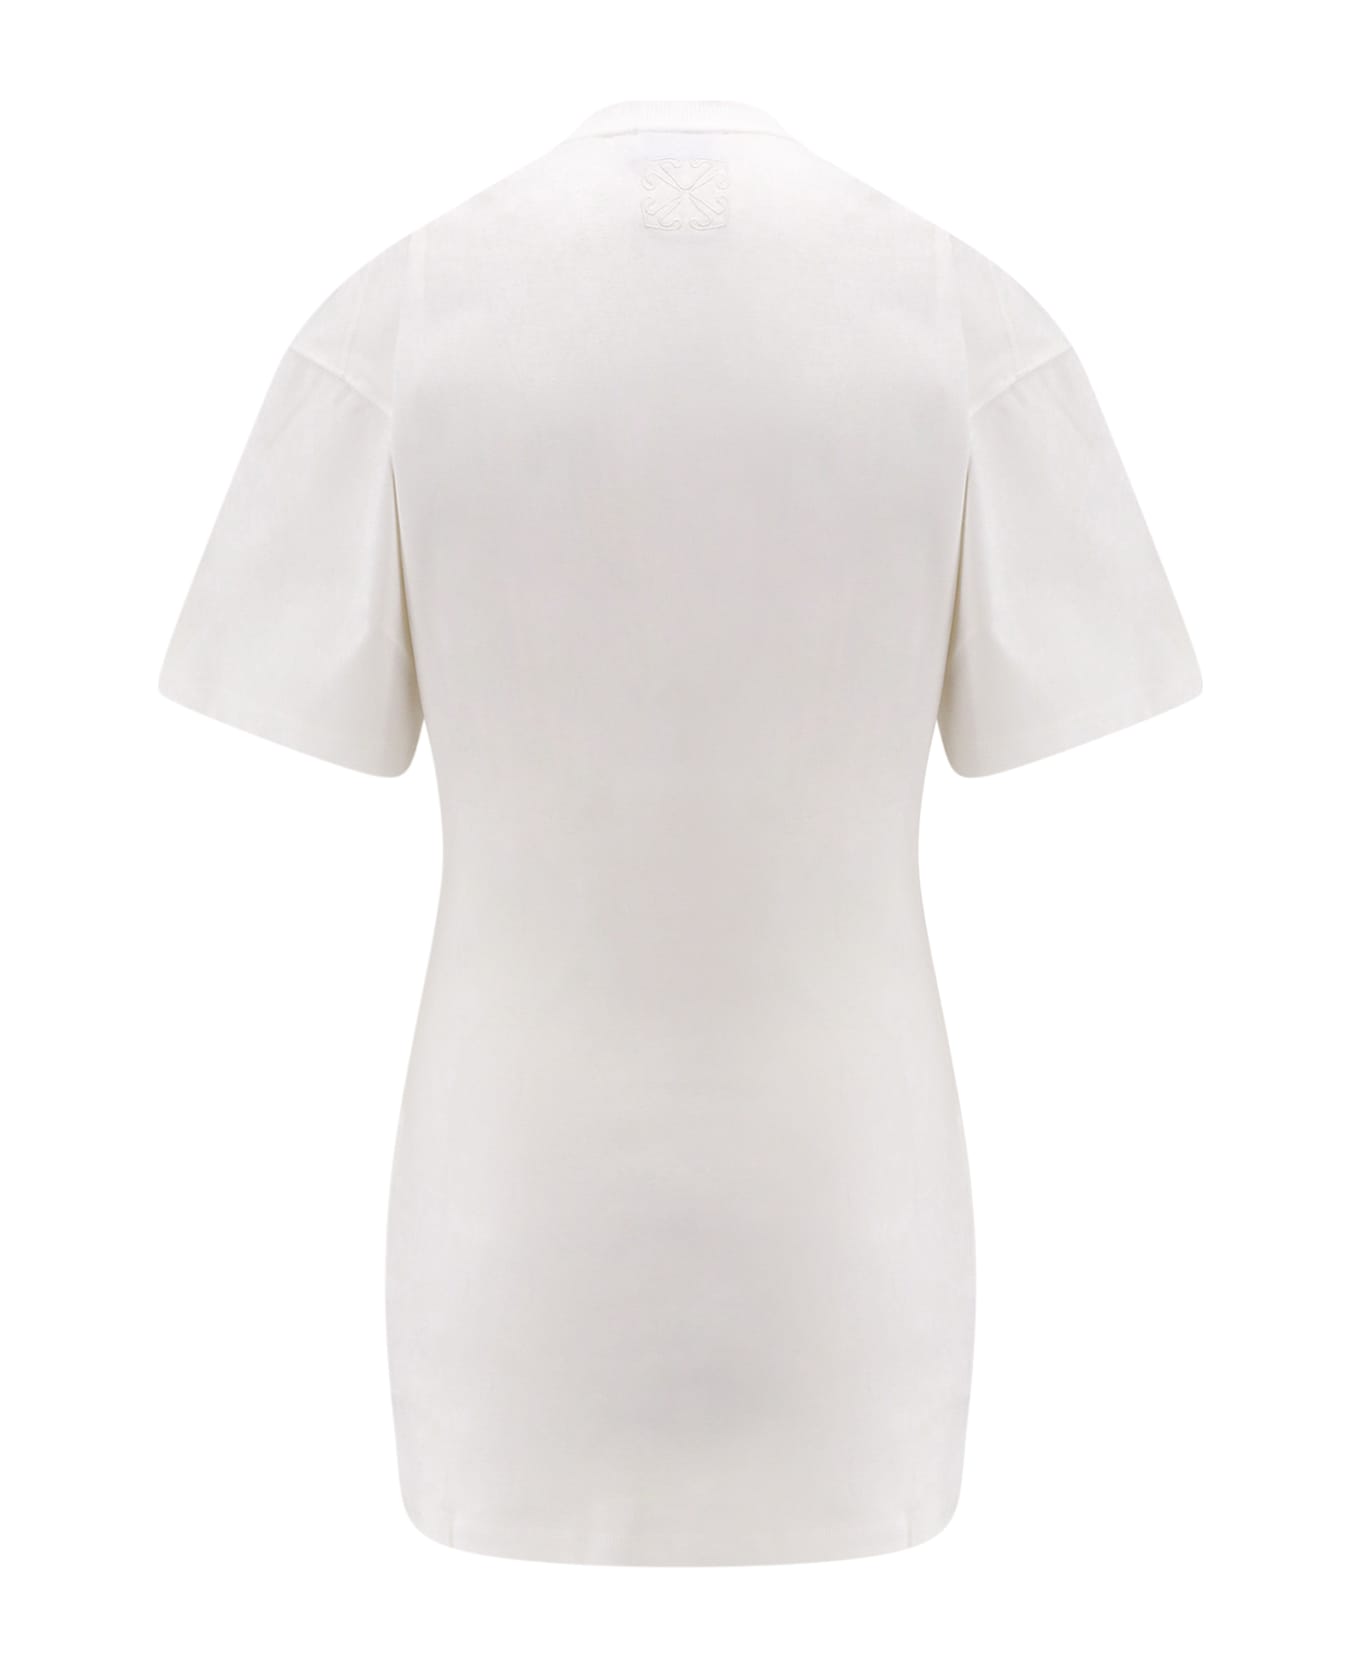 Off-White T-shirt - White Tシャツ